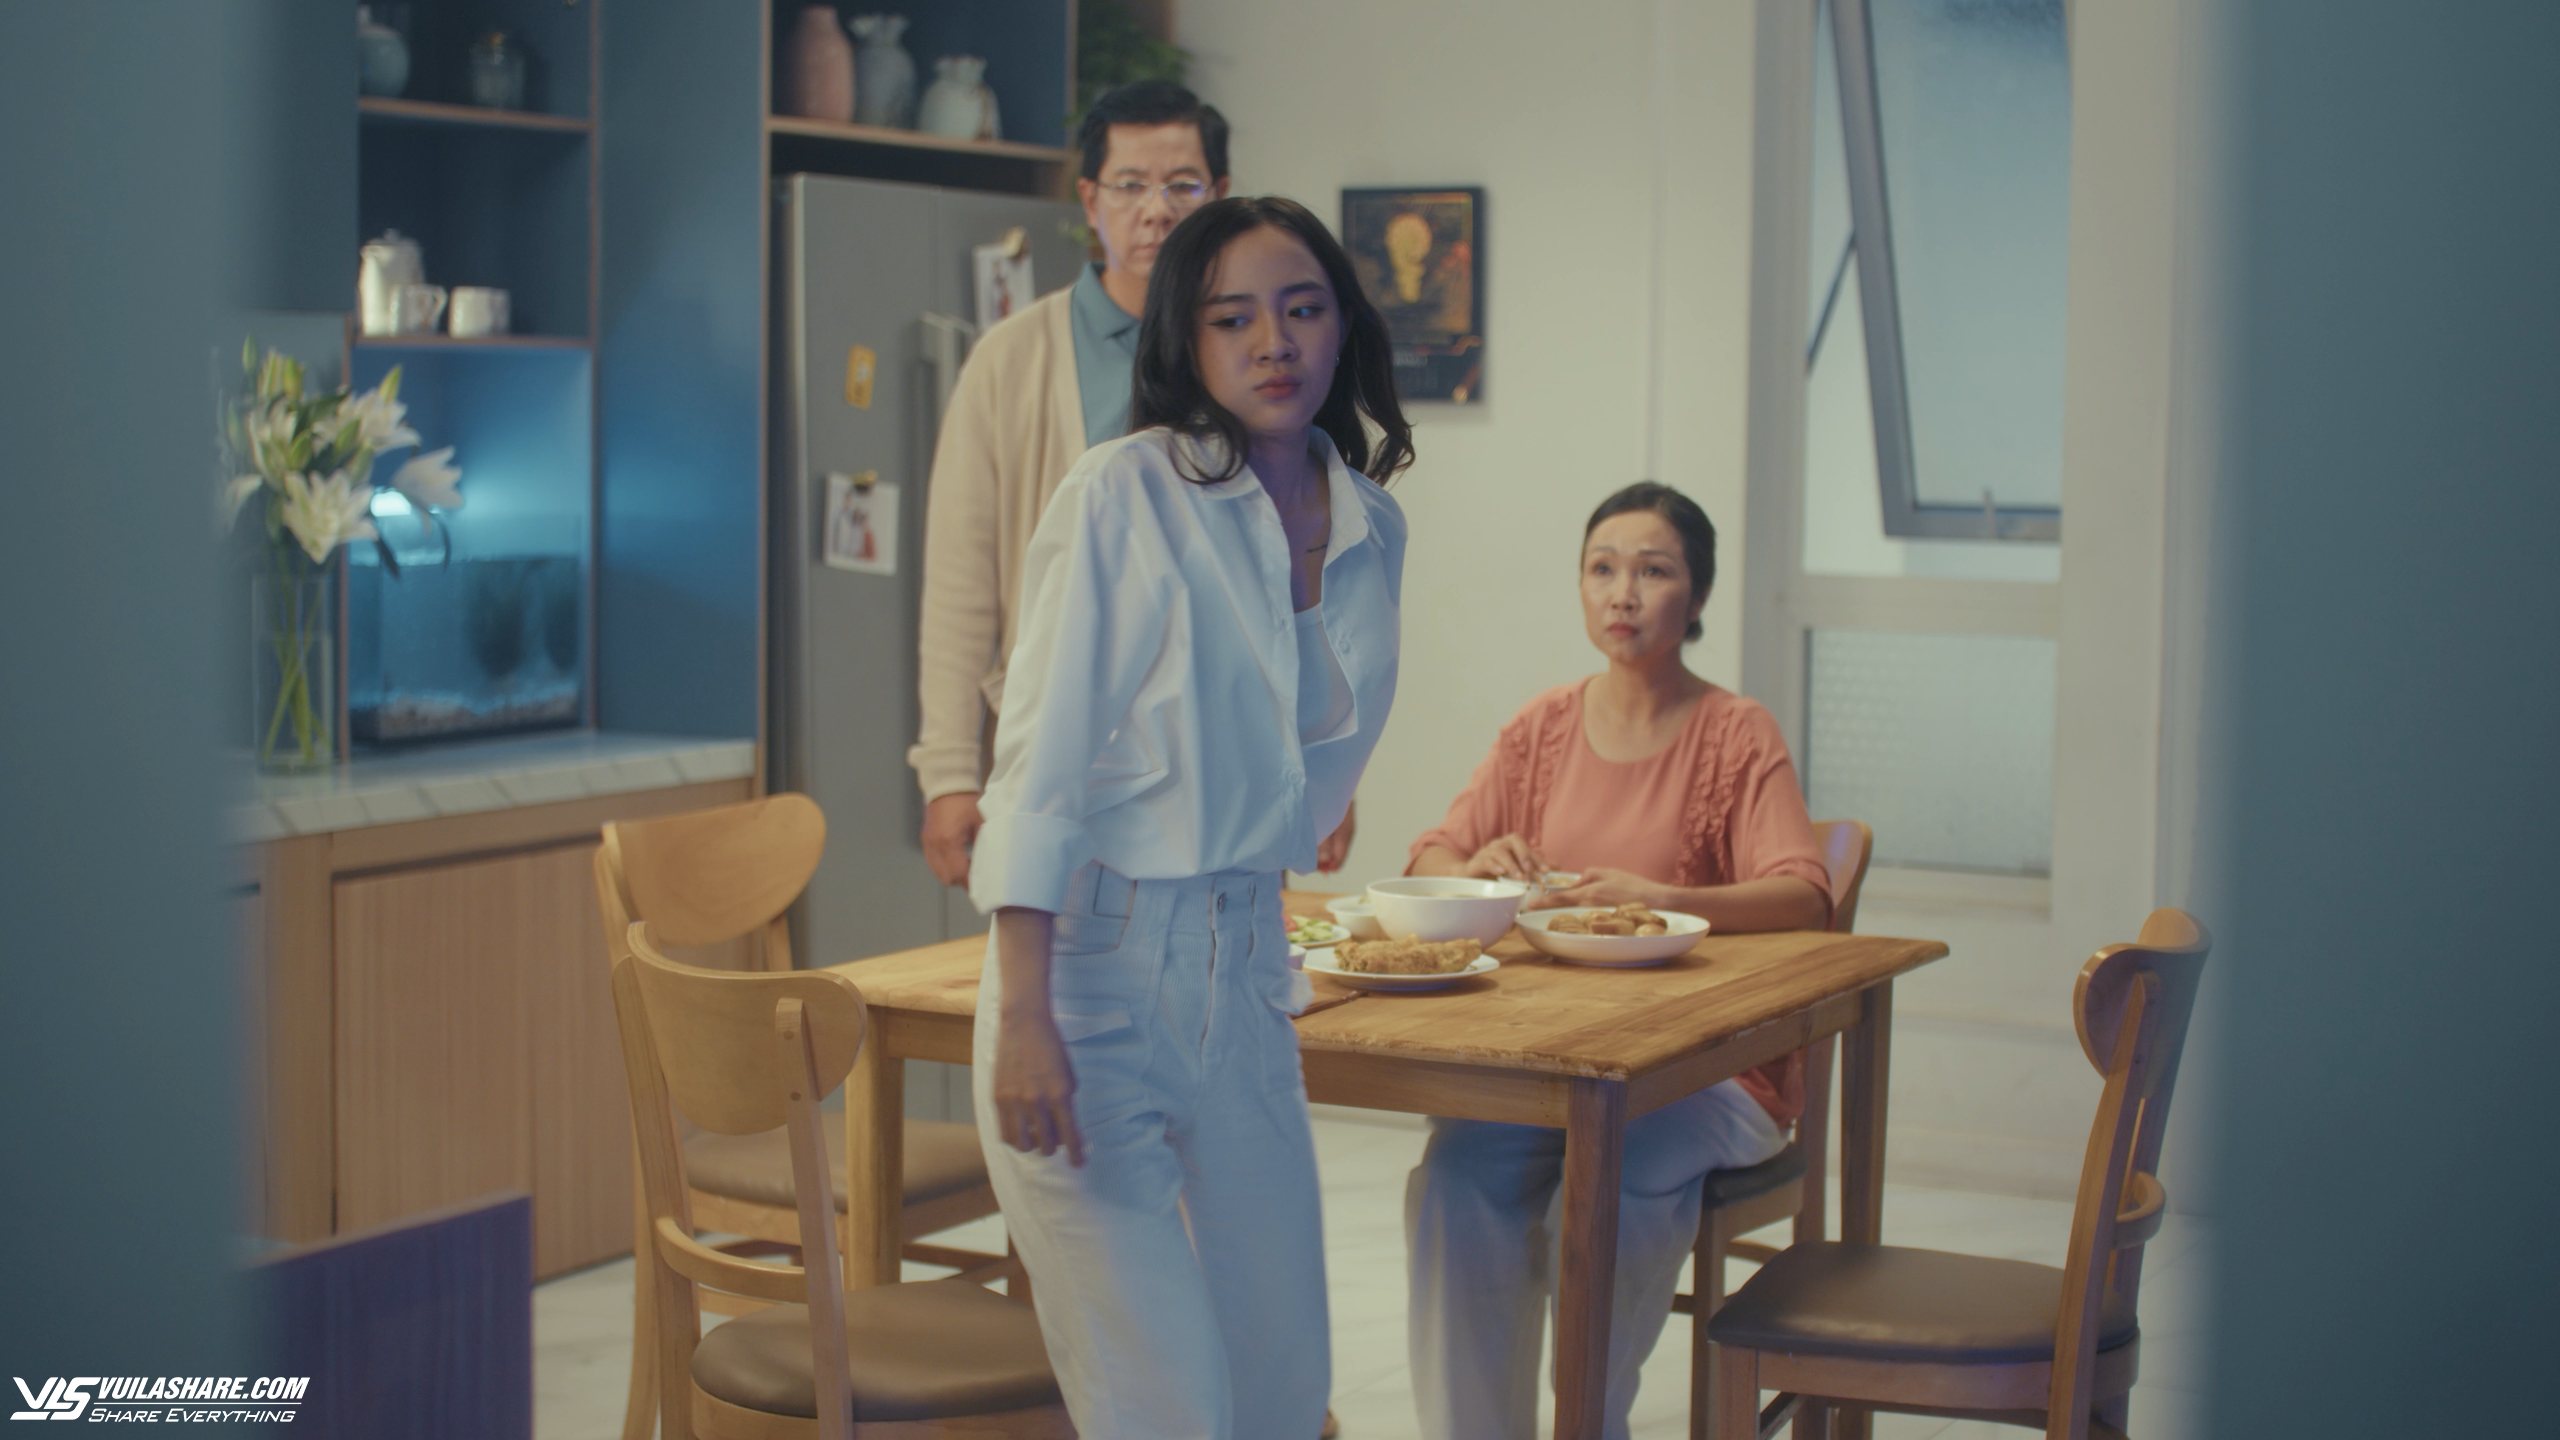 'Gần tim, thêm yêu thương!' - thước phim chạm đến nỗi lòng của bao gia đình Việt- Ảnh 1.